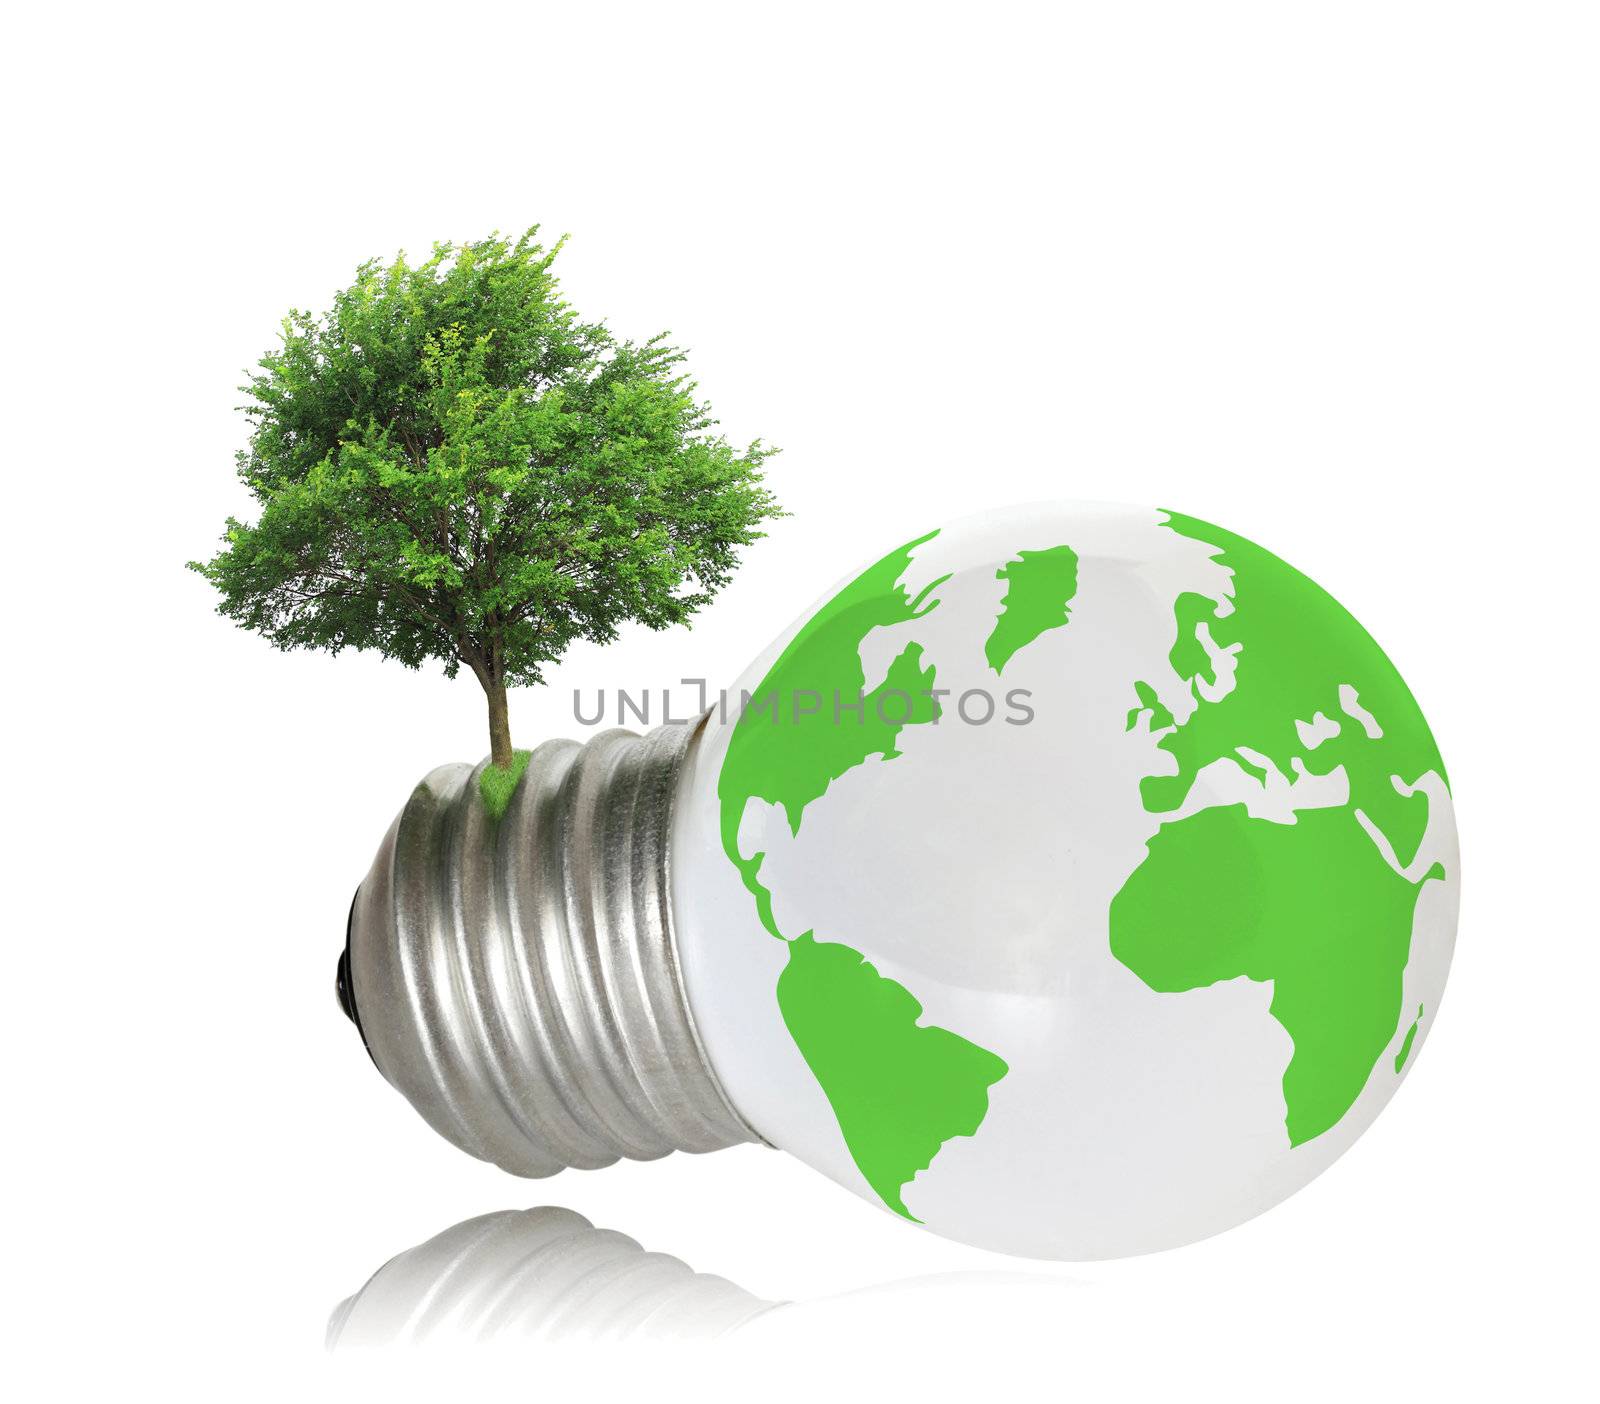 ecological concept, symbolizing renewable energy, bio energy
